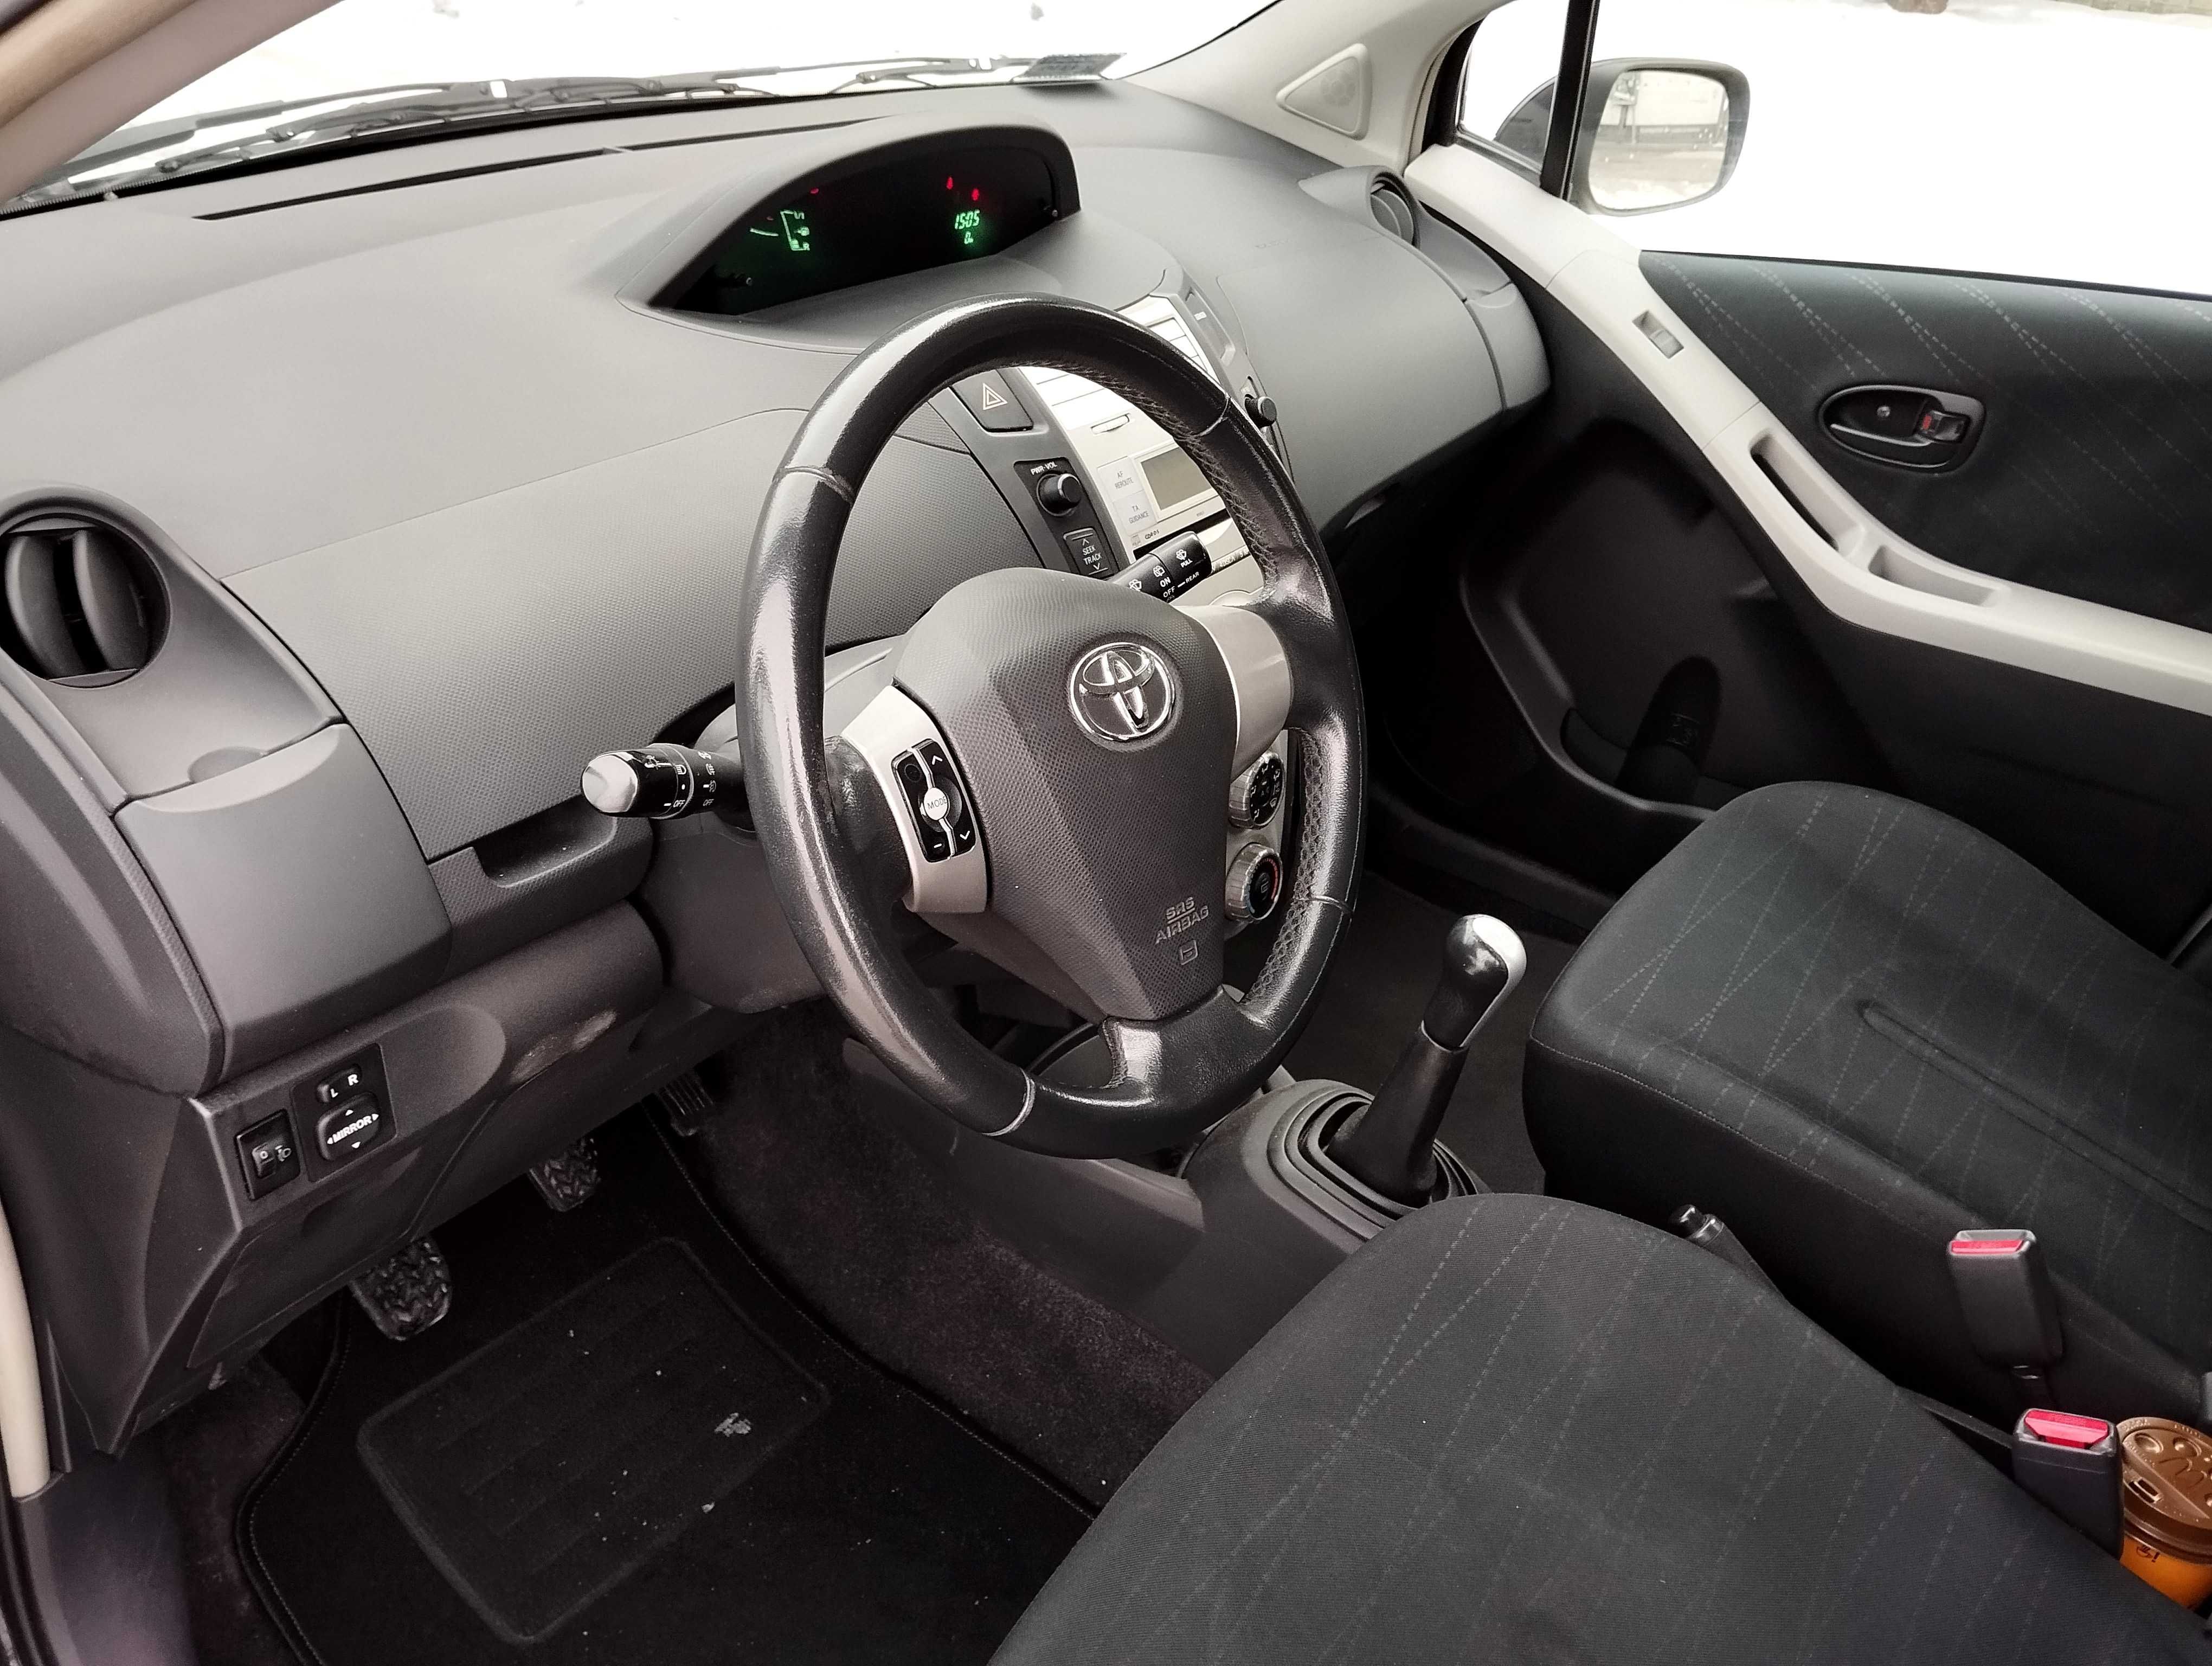 Toyota Yaris, benzyna, 5 drzwi, klimatyzacja, stan bdb, serwisowana